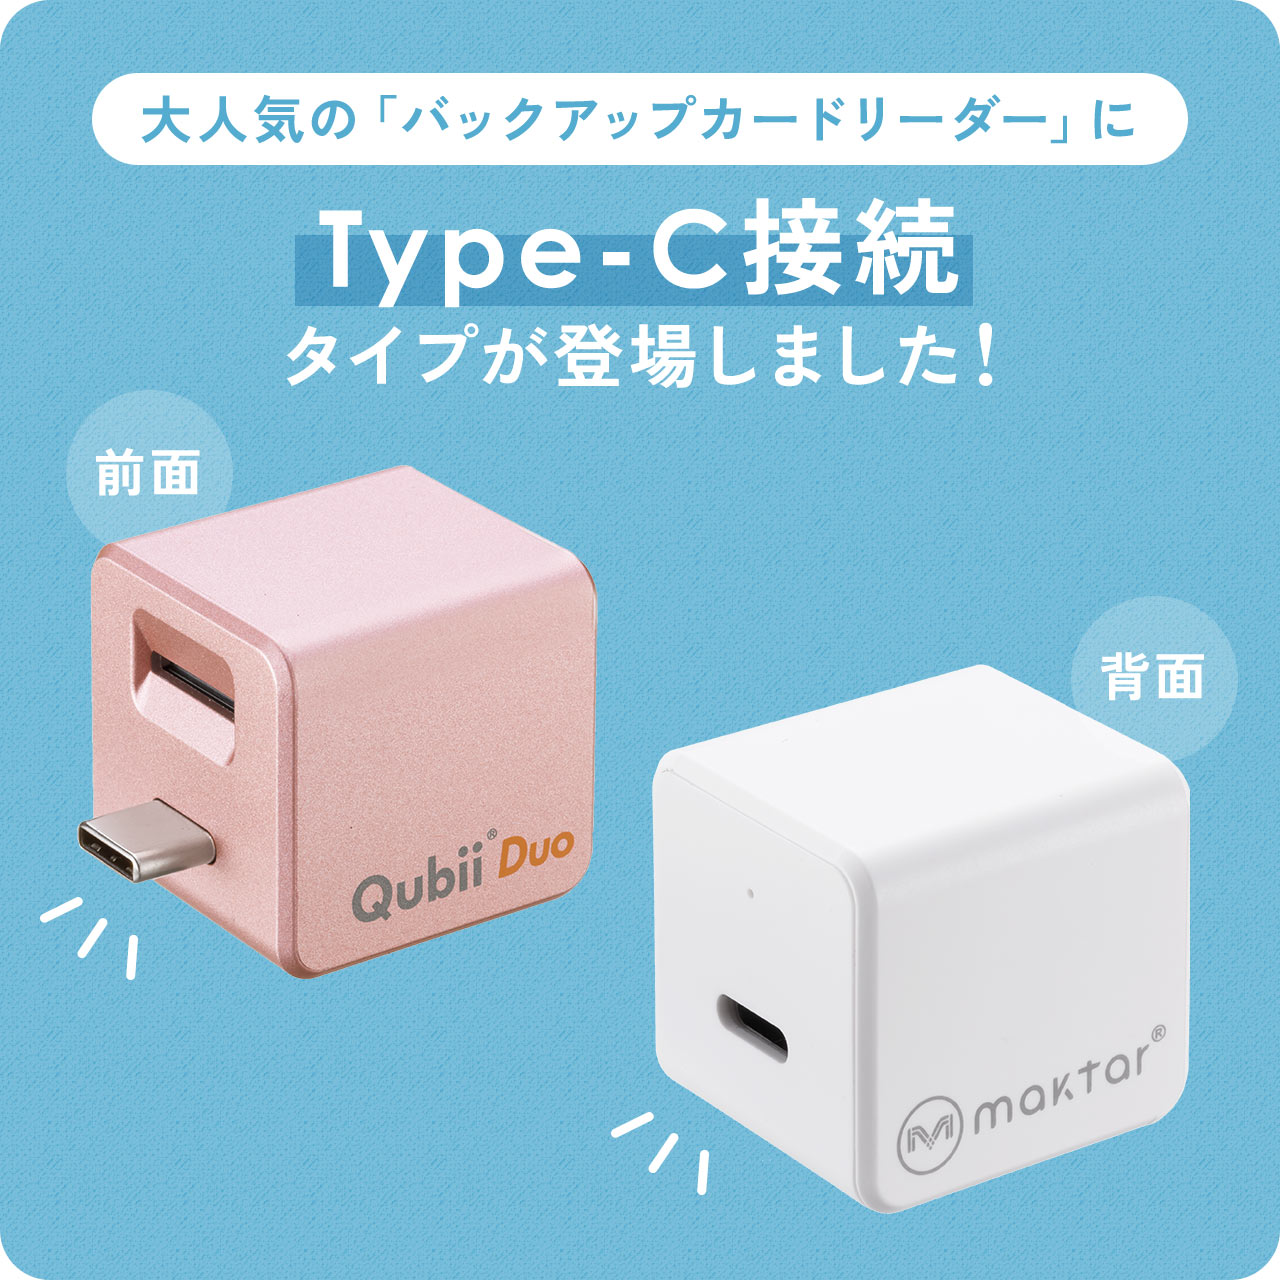 iPhone バックアップ 自動 Qubii Duo Type-C Android カードリーダー microSD iPad iOS スマホ 充電 USB-C 簡単接続 動画 写真 データ保存 400-ADRIP014｜sanwadirect｜04